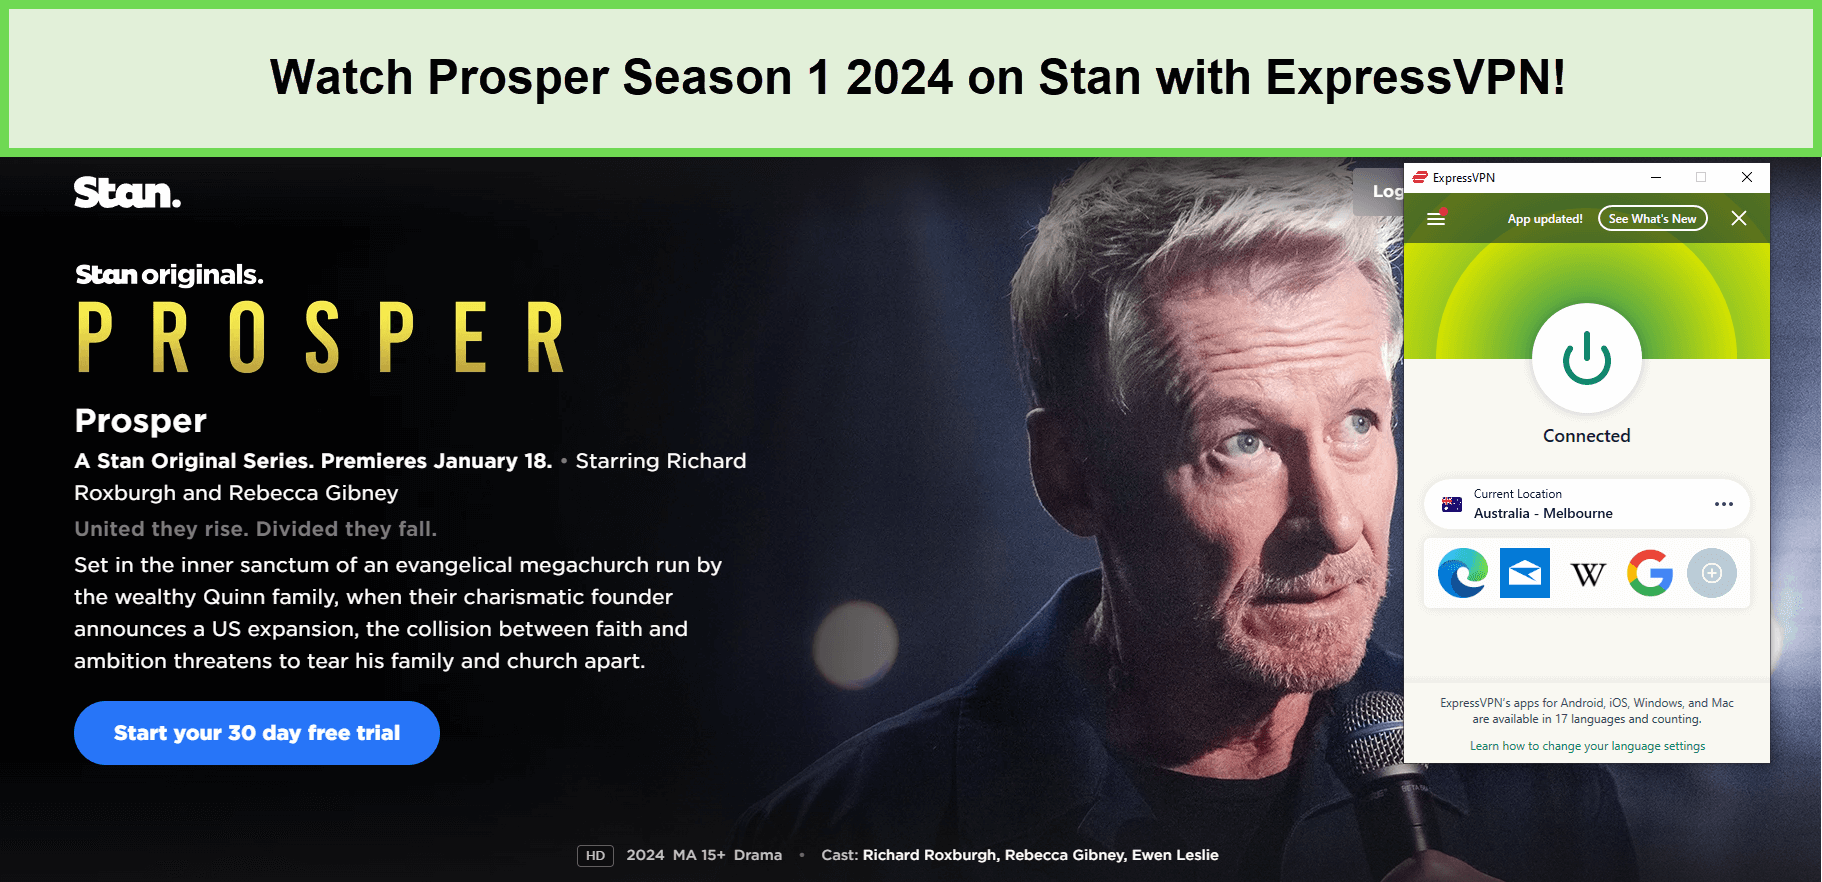 Watch-Prosper-Season-1-2024-outside-Australia-on-Stan-with-ExpressVPN